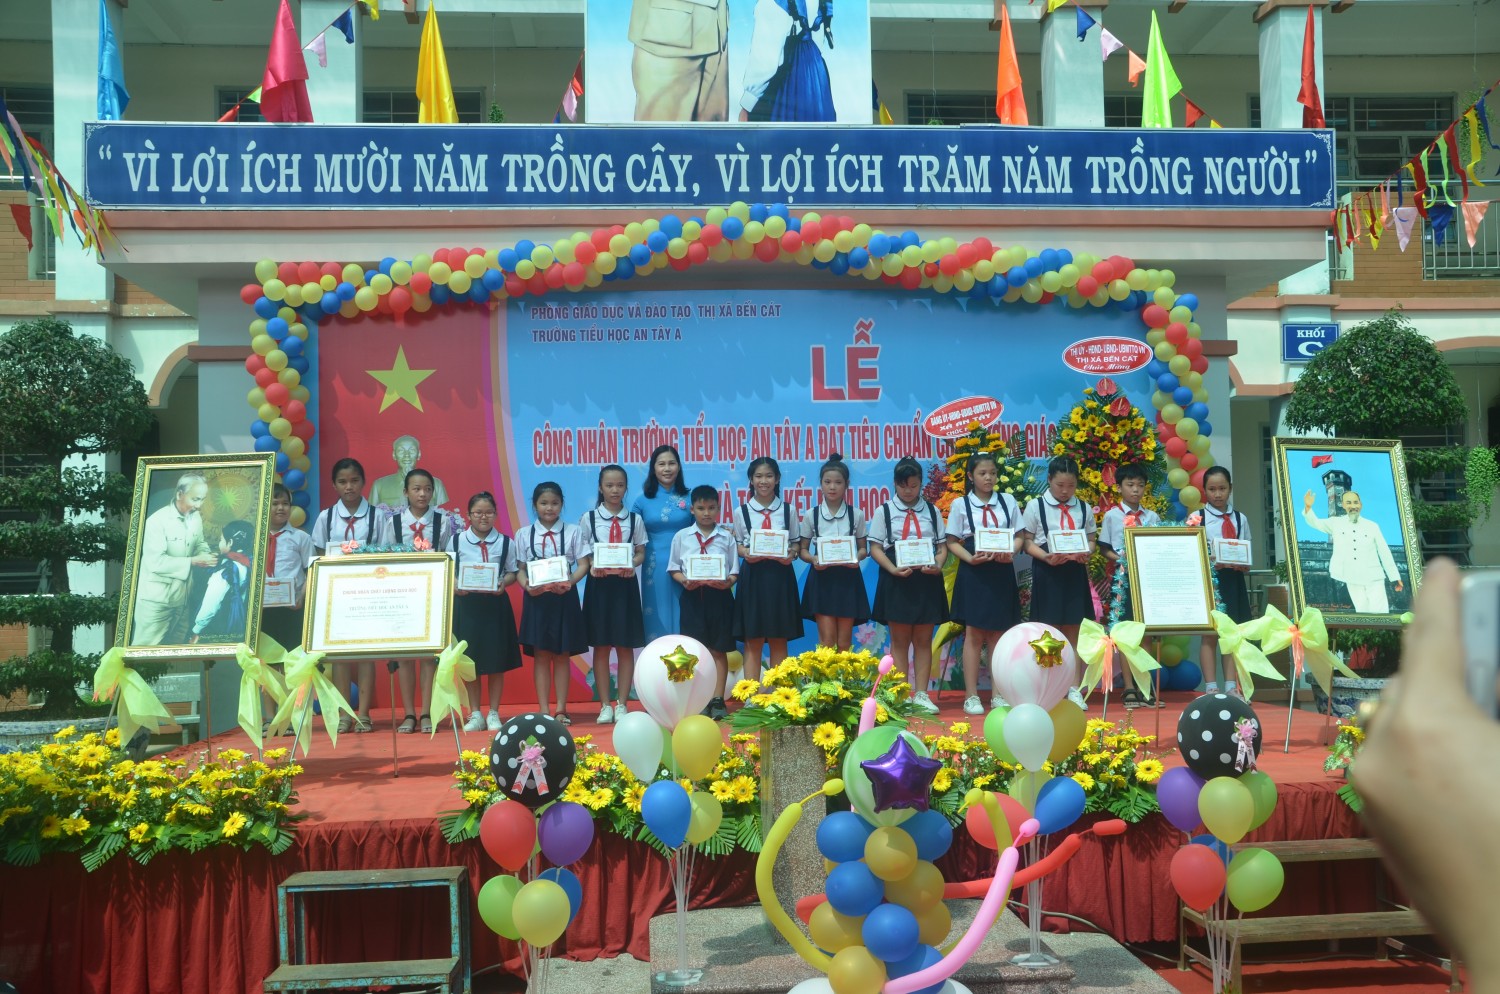 Bà Trần Thị Thảo – Phó Chủ tịch UBND thị xã Bến Cát trao Giấy khen và quà cho học sinh